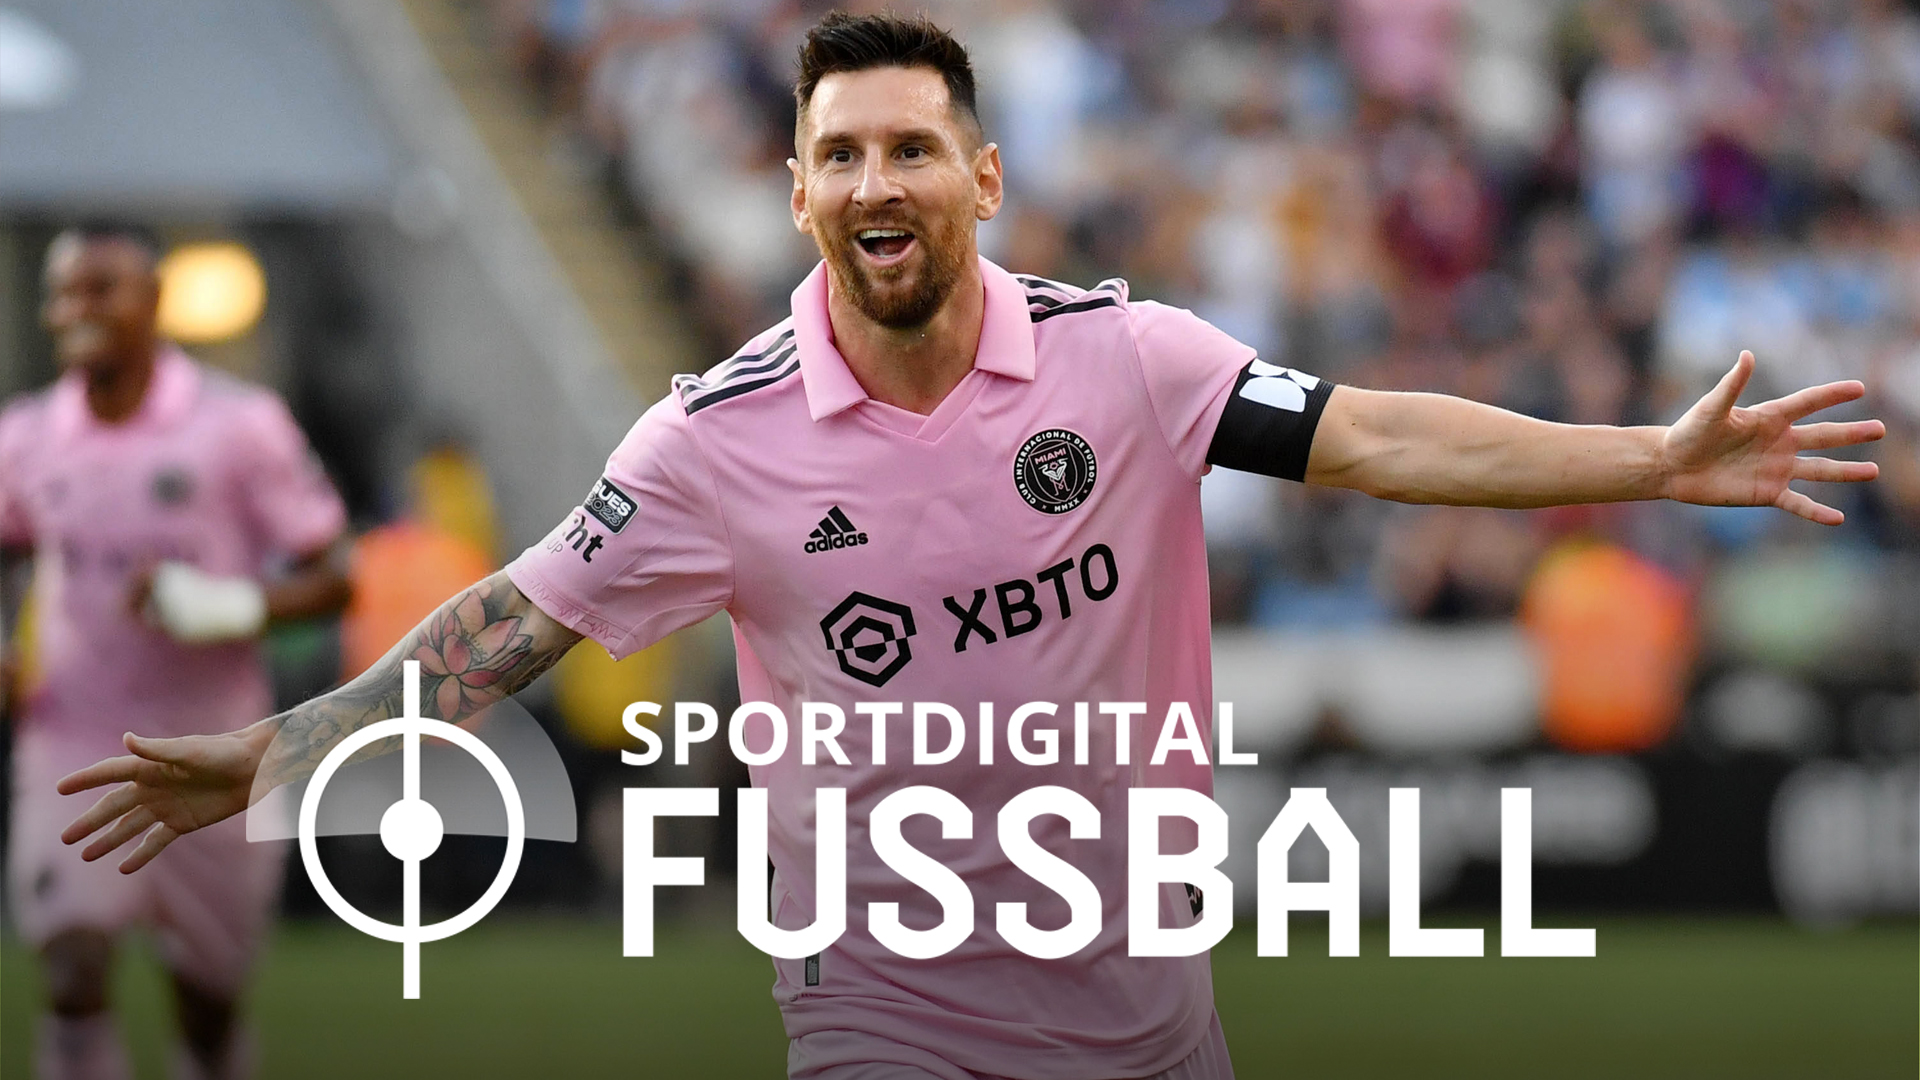 Lionel Messi auf dem Weg zum Pokalsieg? Der US Open Cup live bei Sportdigital FUSSBALL!